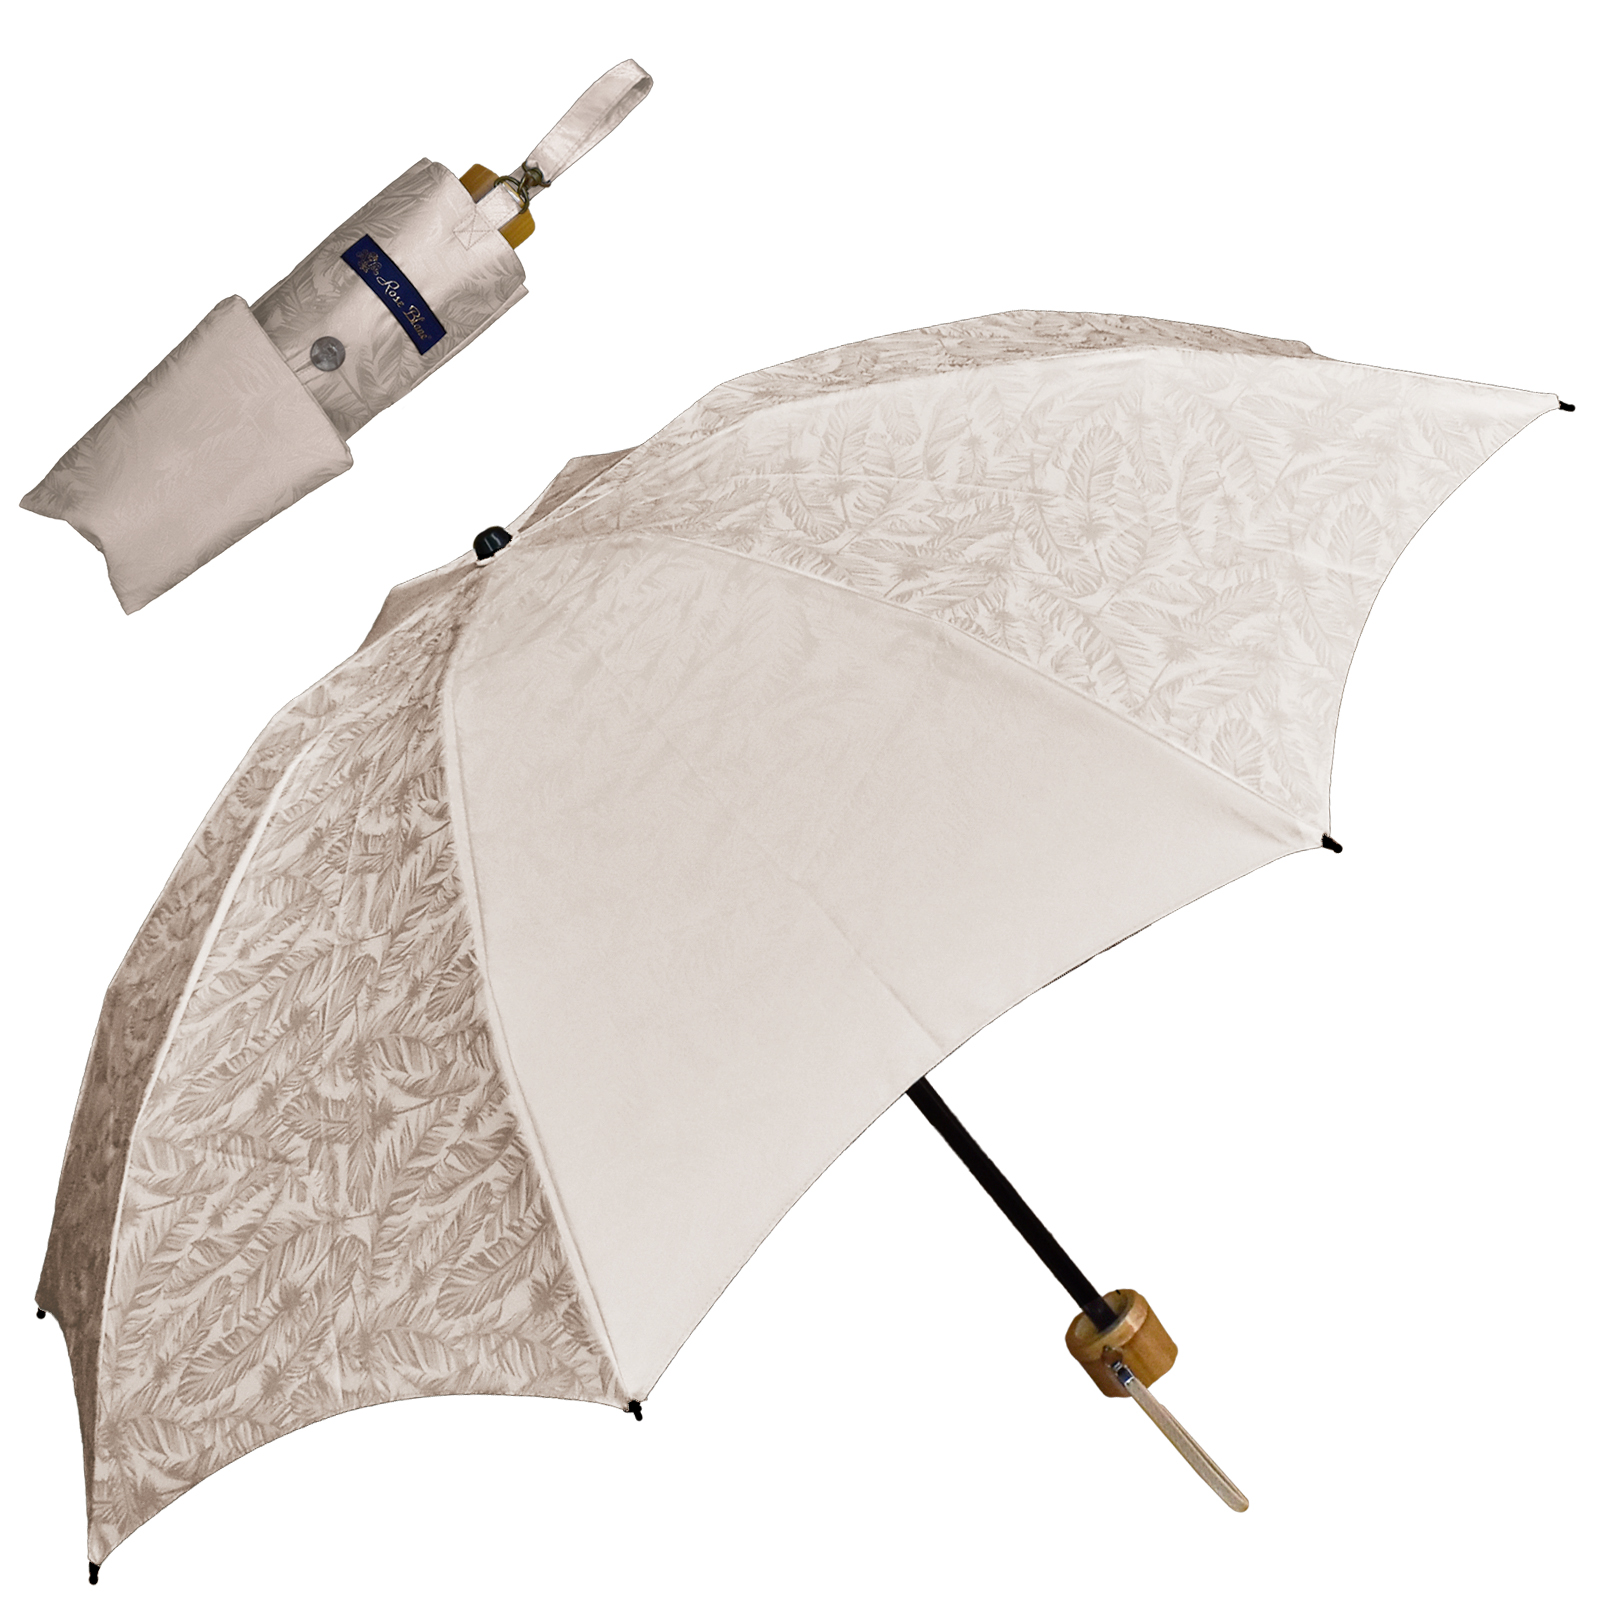 日傘 完全遮光 折りたたみ uv 軽量 晴雨兼用 3段 折りたたみ傘 遮光 100% 1級遮光 遮熱...